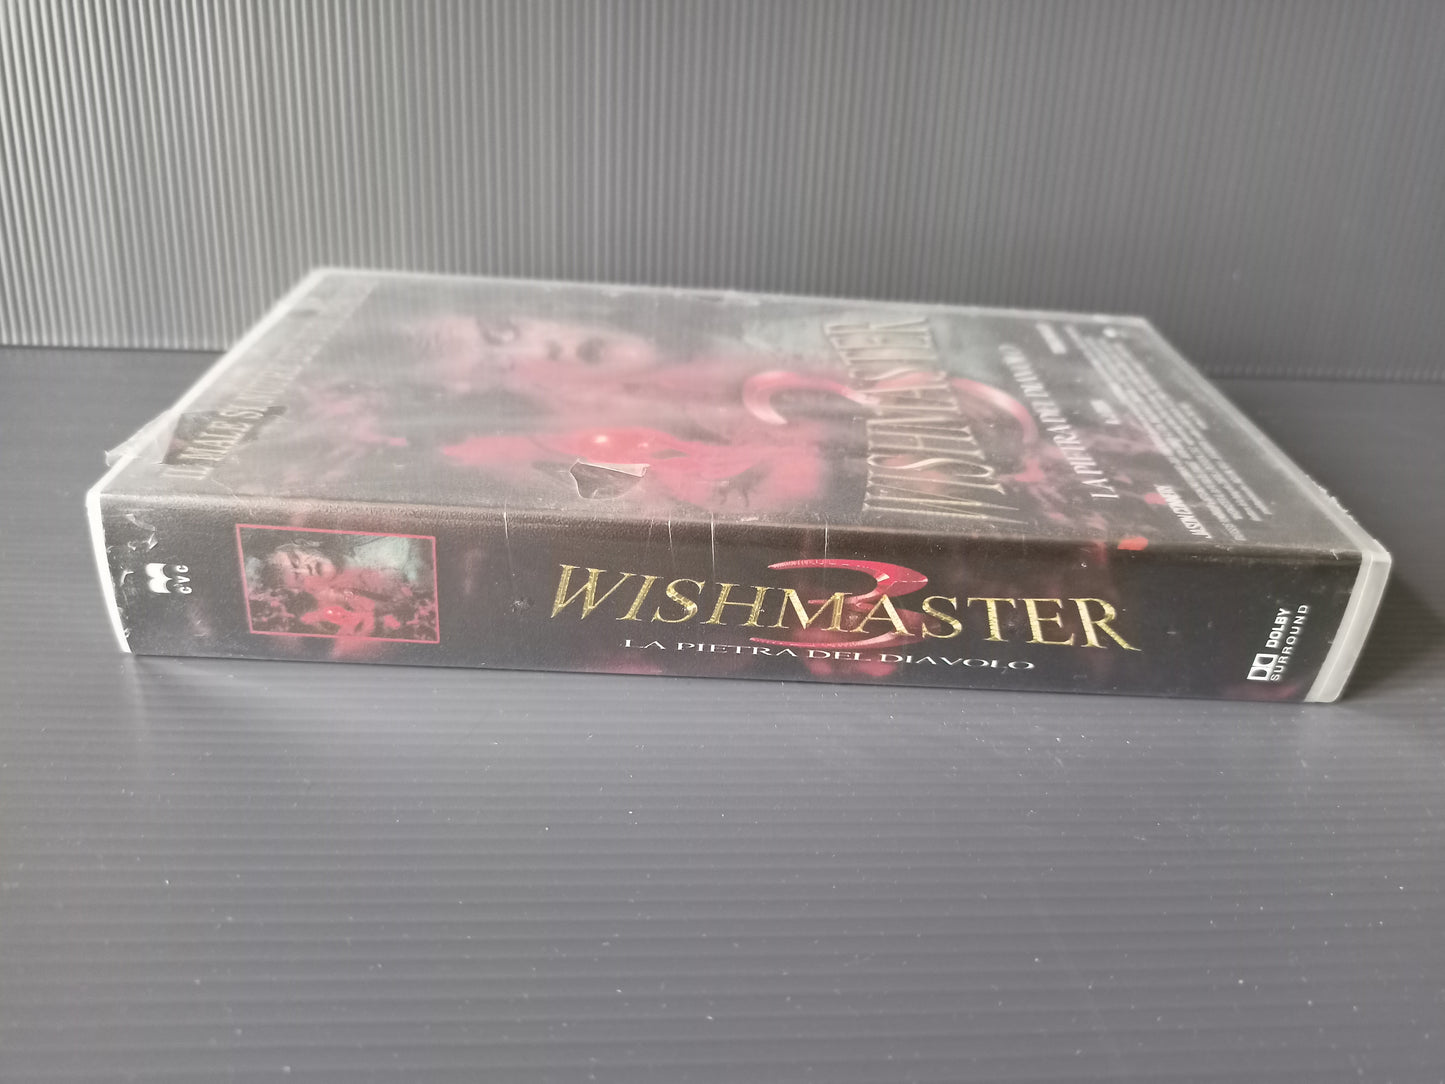 VHS Wishmaster 3 la pietra del diavolo